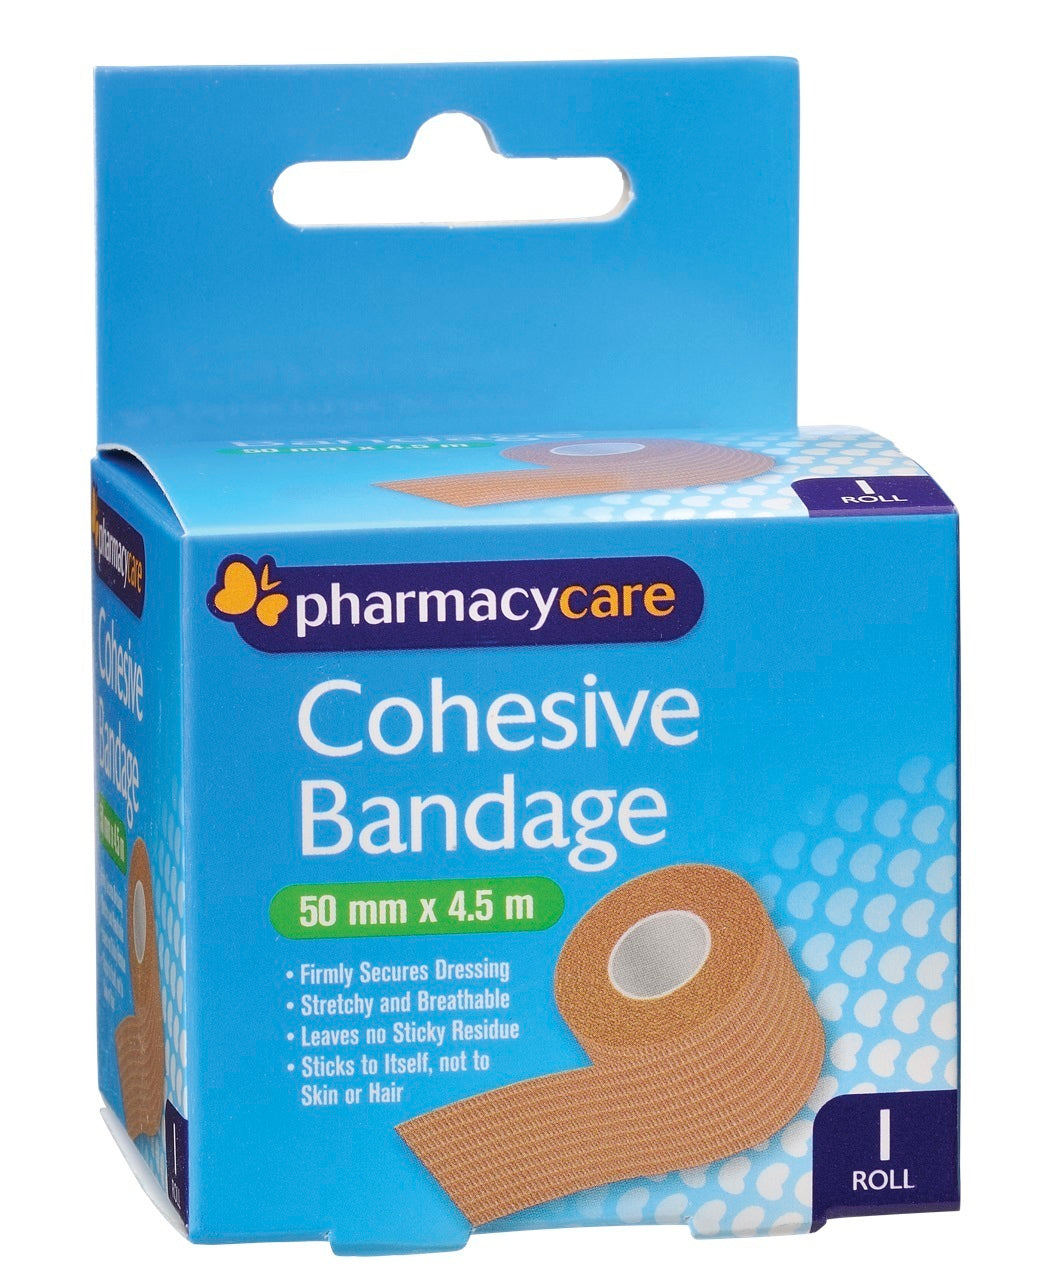 Pharmacy Care Cohesive Bandage 50mmx4.5m